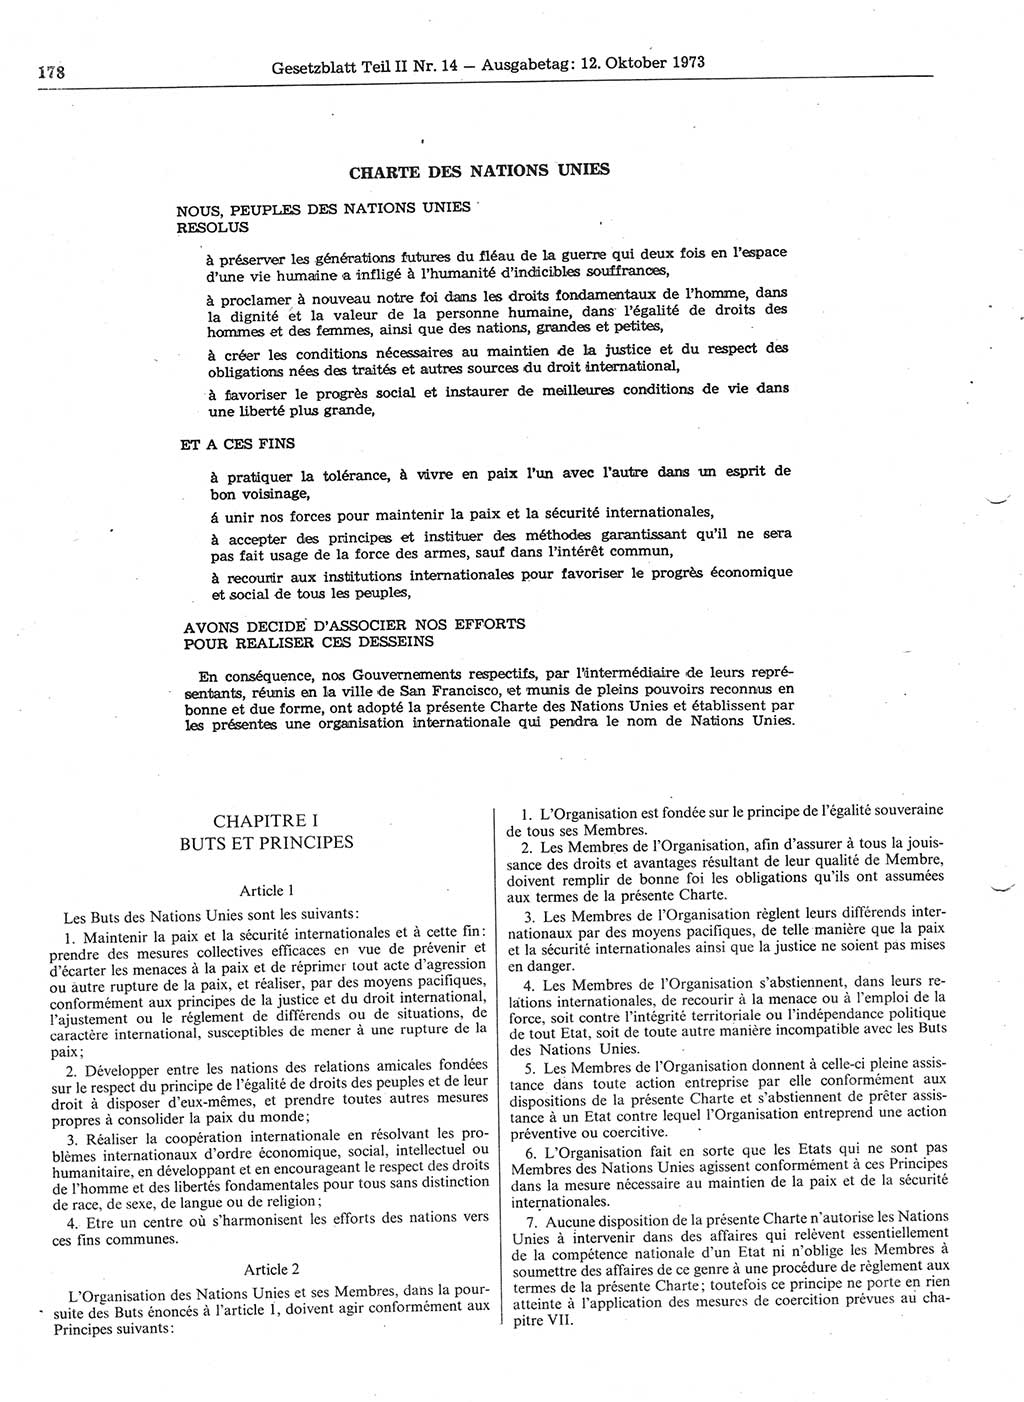 Gesetzblatt (GBl.) der Deutschen Demokratischen Republik (DDR) Teil ⅠⅠ 1973, Seite 178 (GBl. DDR ⅠⅠ 1973, S. 178)